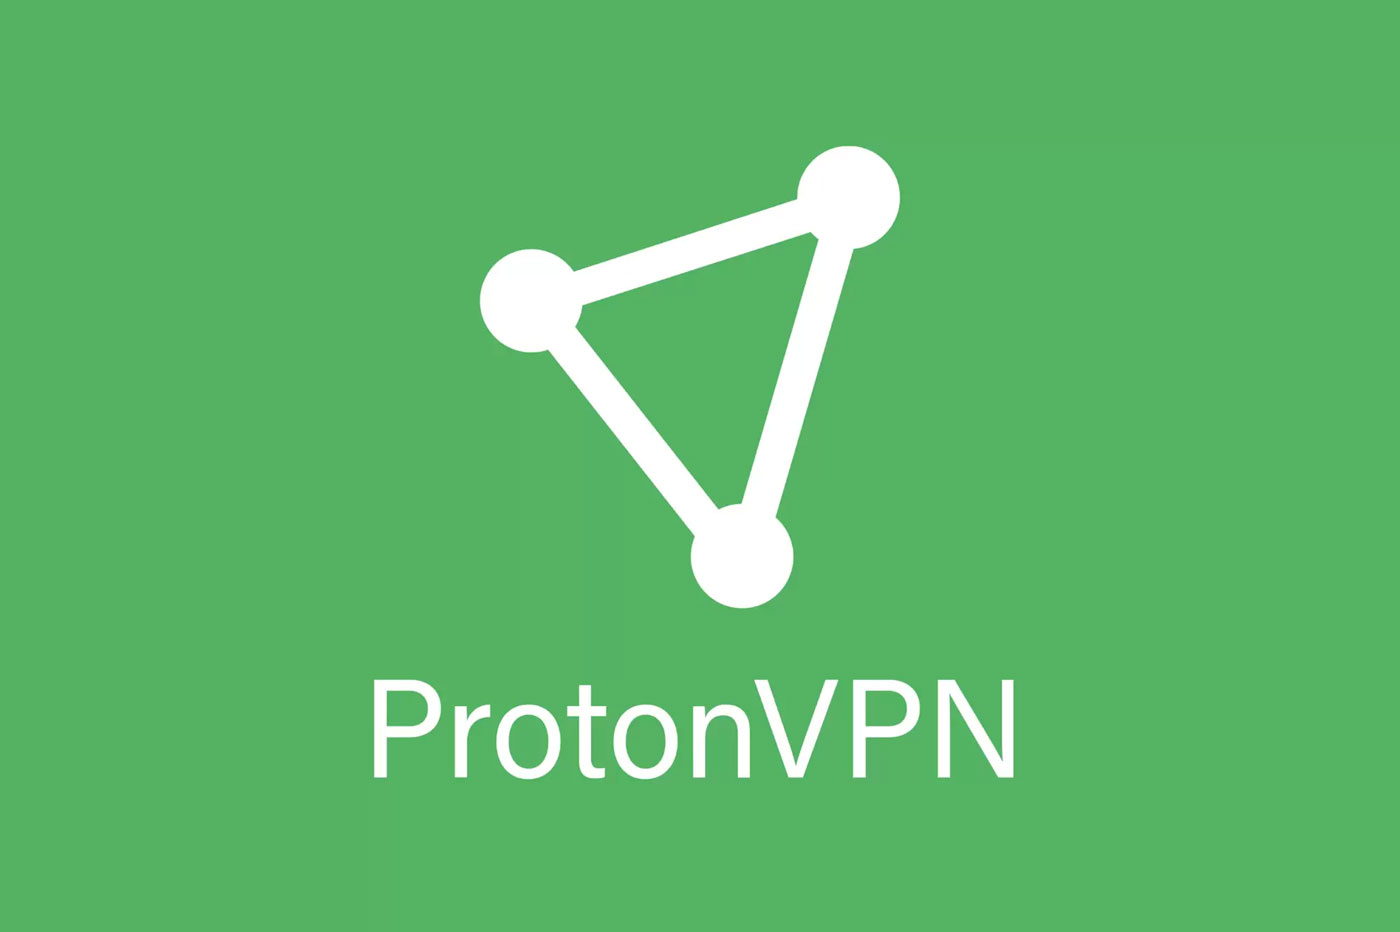 ProtonVPN - 무제한 사용에 가장 적합